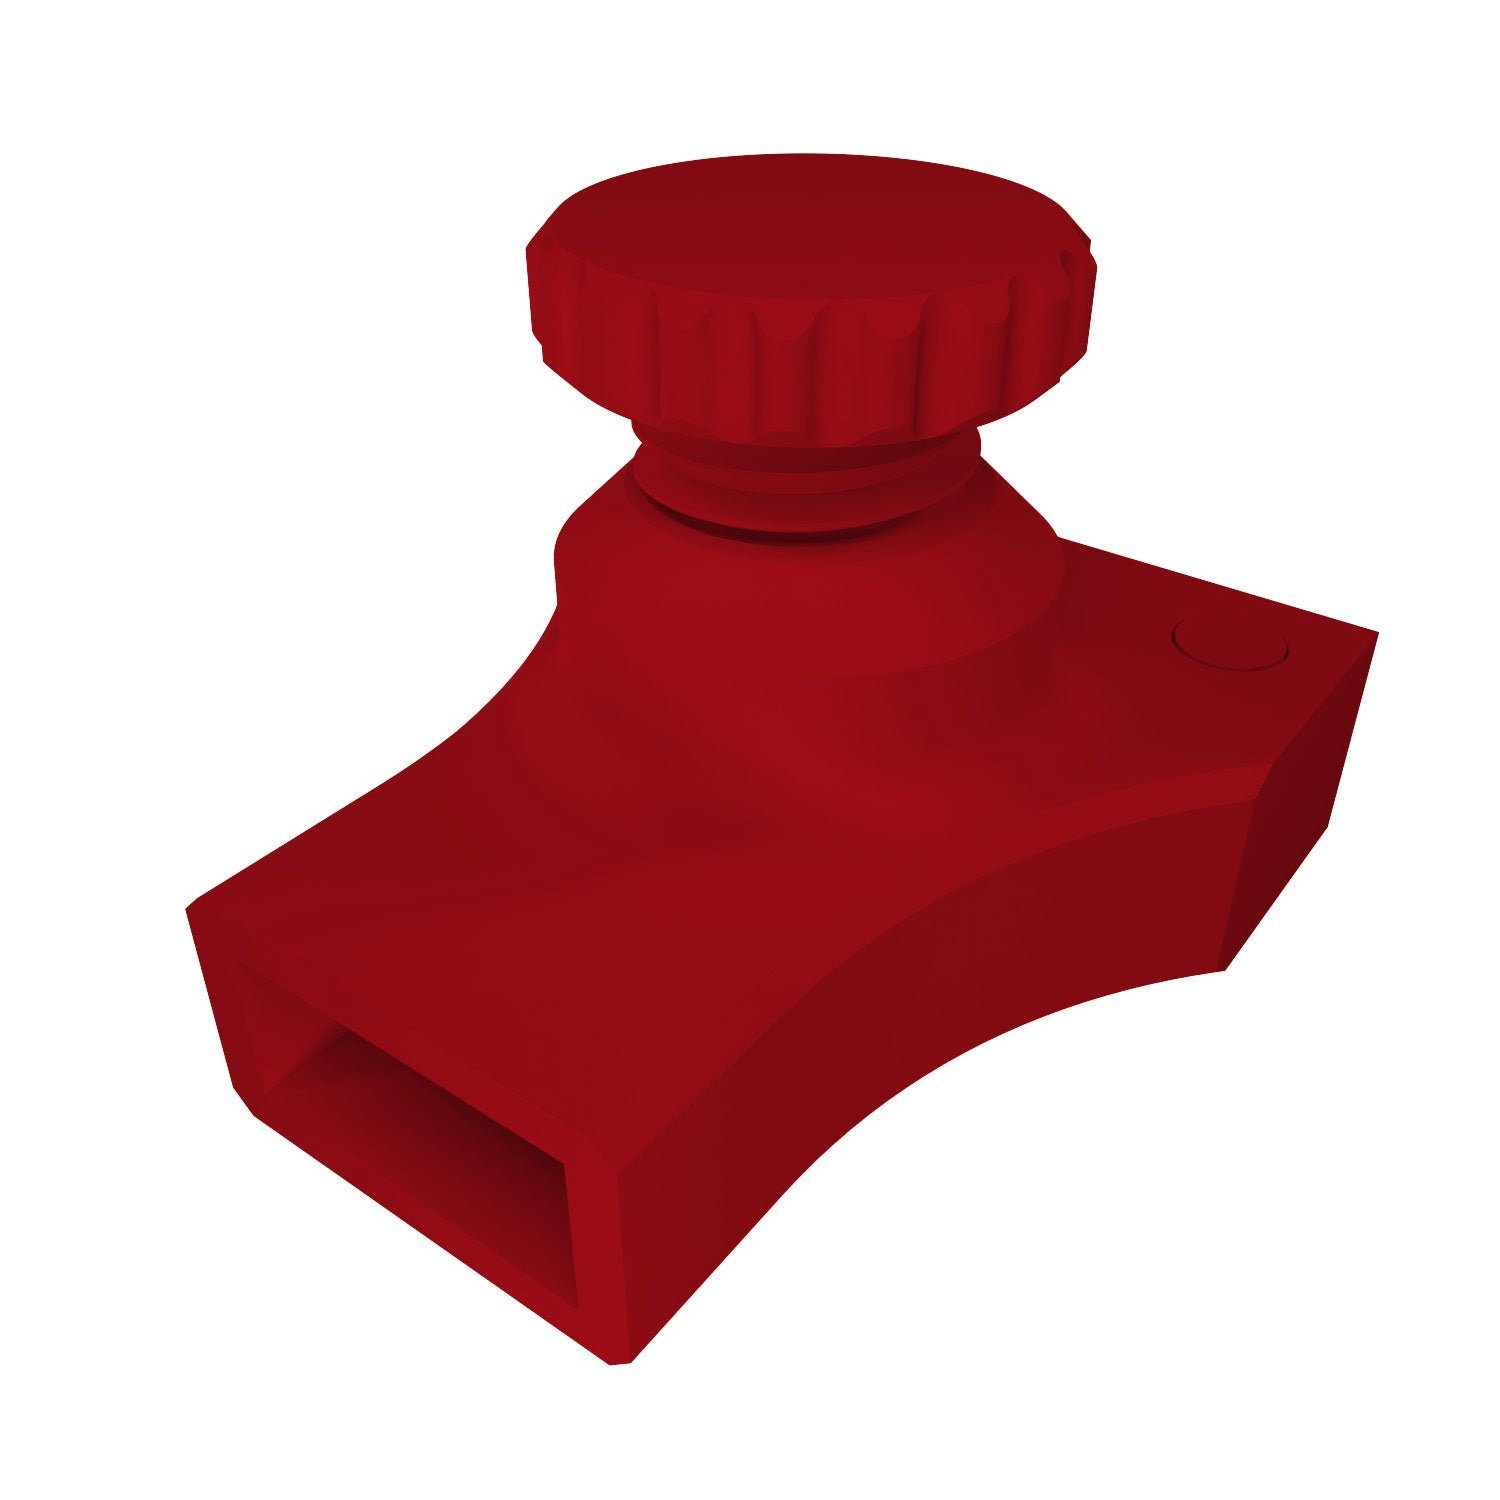 Anreißen für fossi3D Zollstock Anzeic Streichmaß Gliedermaßstab Zollstock kompatibel Rot